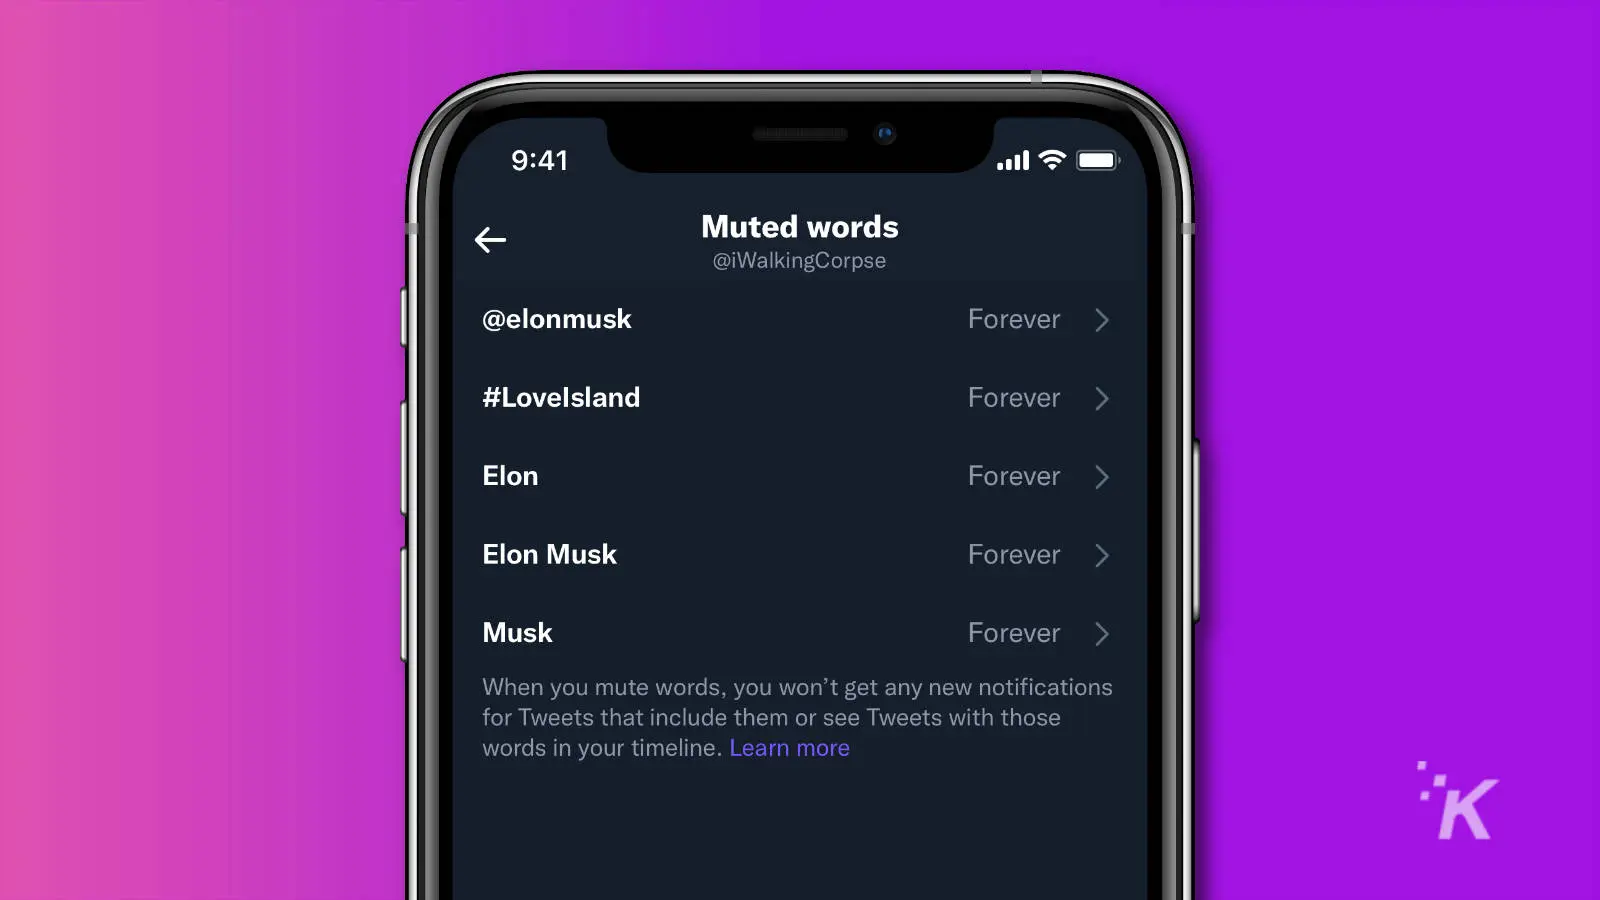 captura de pantalla de la aplicación de Twitter que muestra una lista de palabras silenciadas